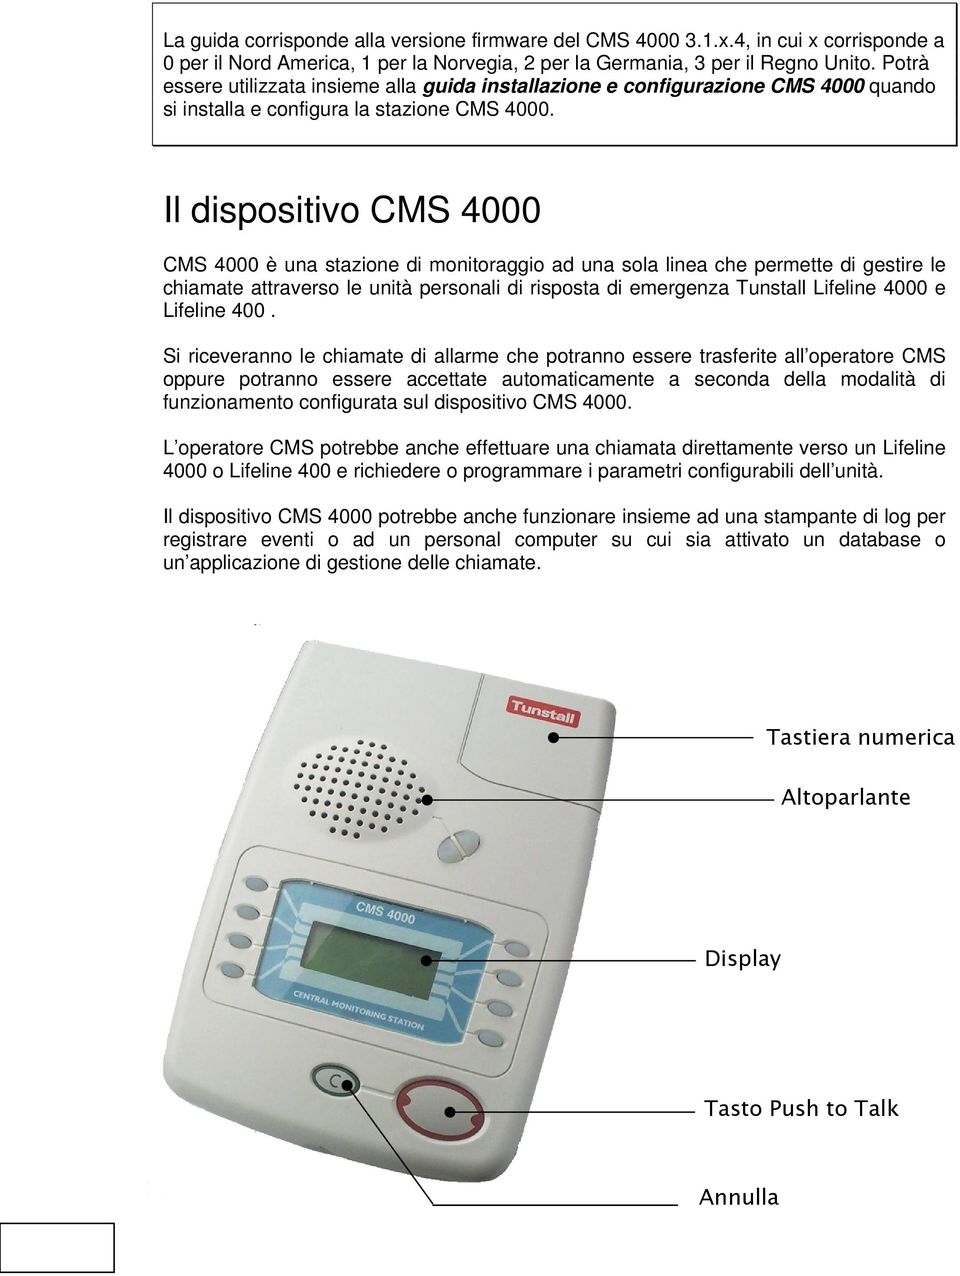 Il dispositivo CMS 4000 CMS 4000 è una stazione di monitoraggio ad una sola linea che permette di gestire le chiamate attraverso le unità personali di risposta di emergenza Tunstall Lifeline 4000 e